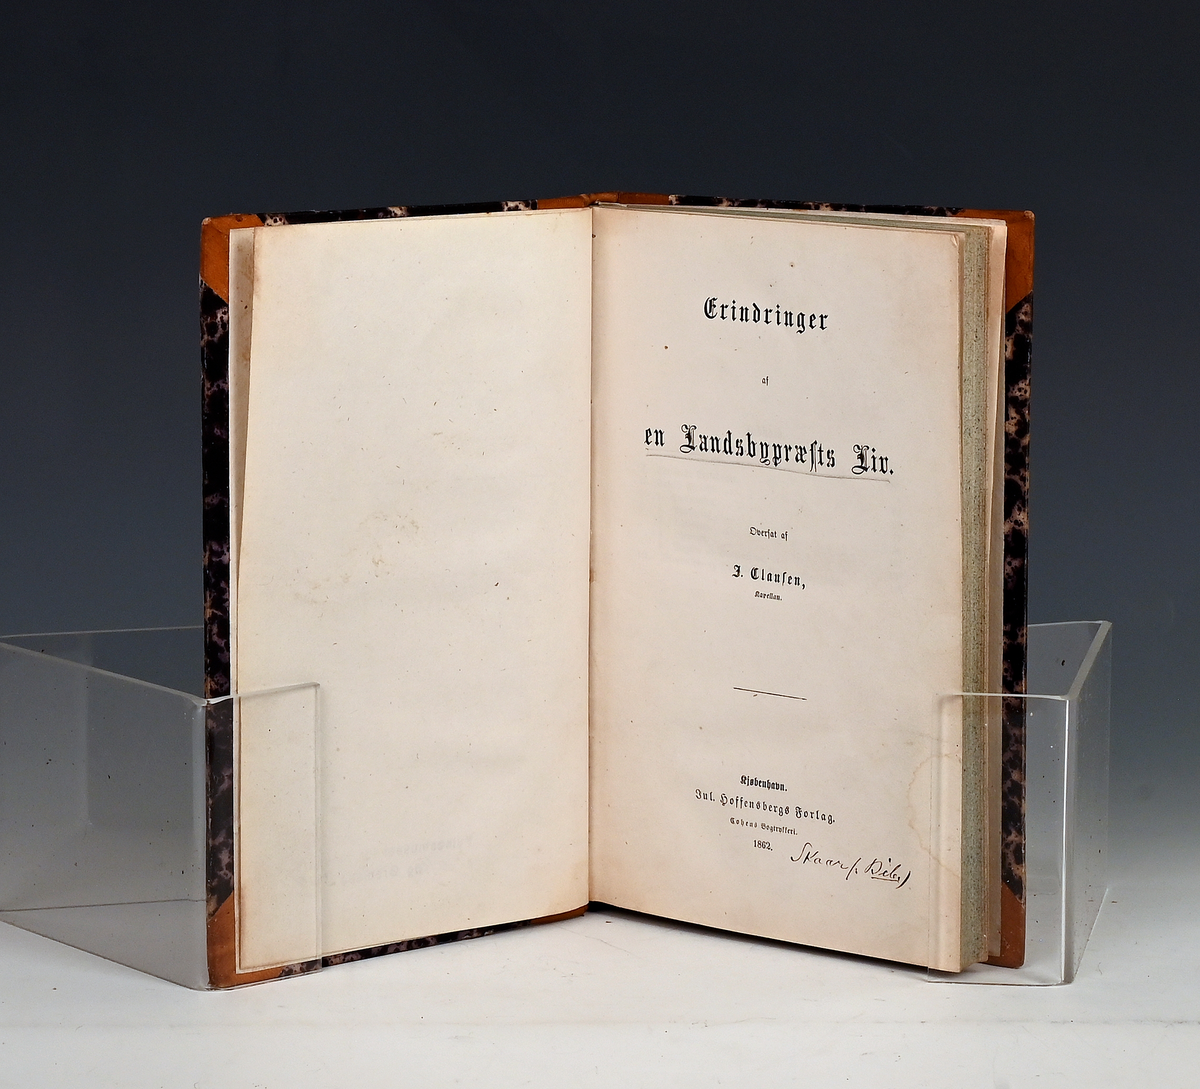 Clausen, J. Erindringer a en Landsbypræsteliv. Kbhv. 1862.